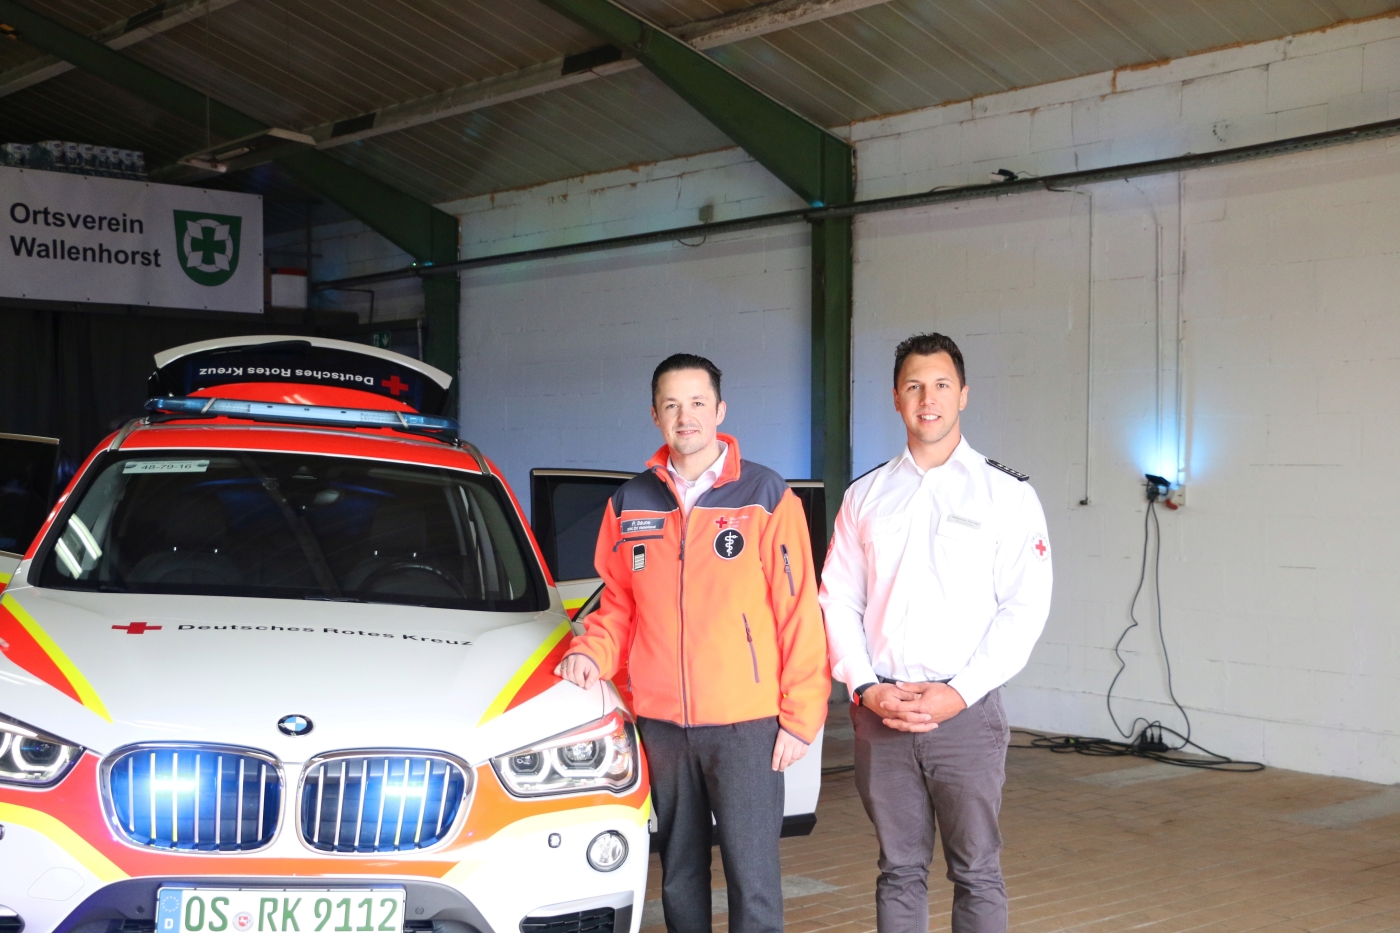 Nach Defekt: Wallenhorster DRK freut sich über neues Einsatzfahrzeug für Sanitäter vor Ort